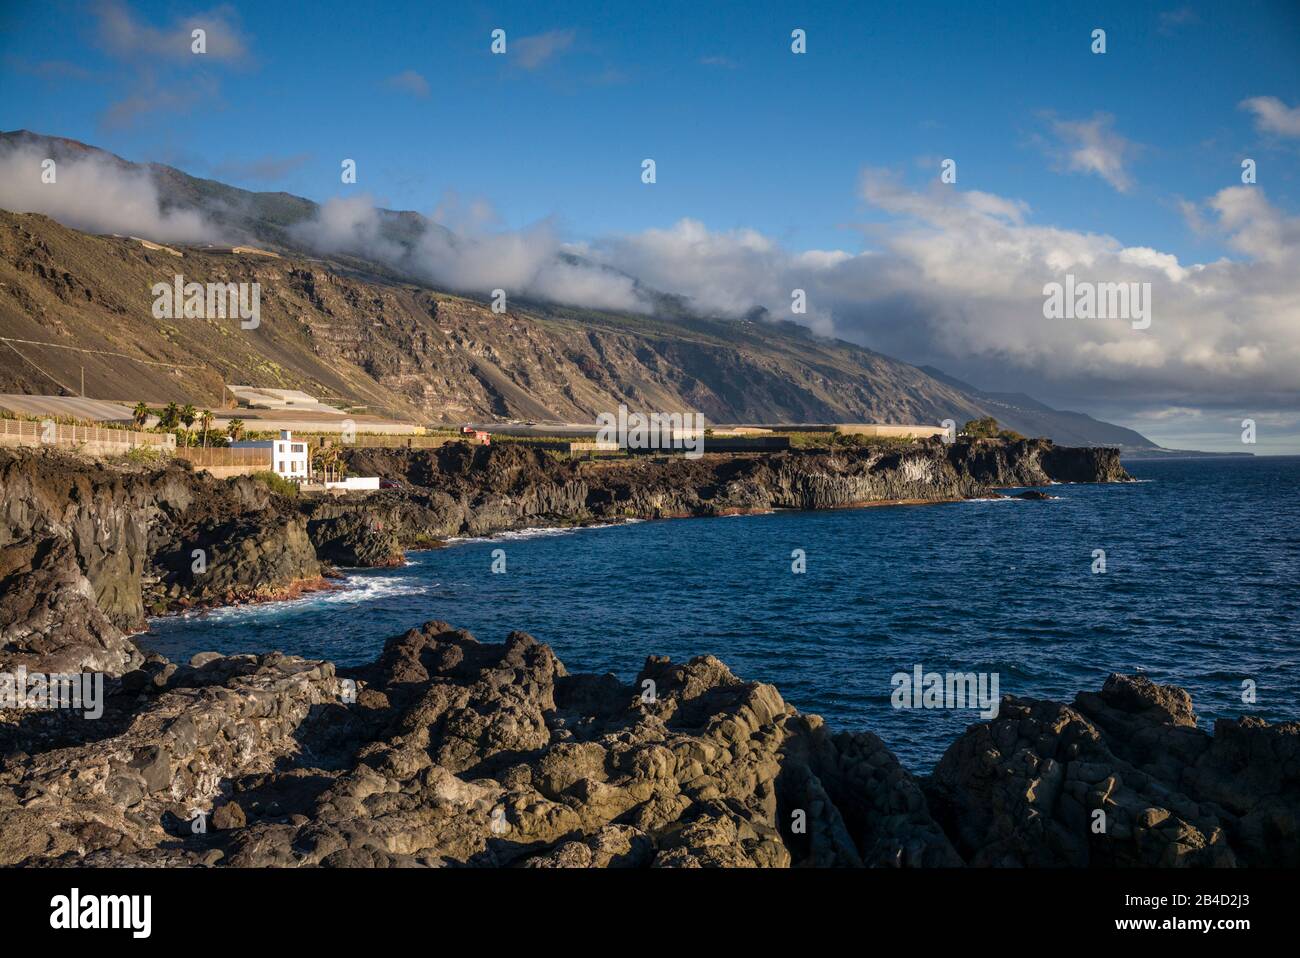 Spain, Canary Islands, La Palma Island, Puerto Naos, banana plantation and mountains Stock Photo